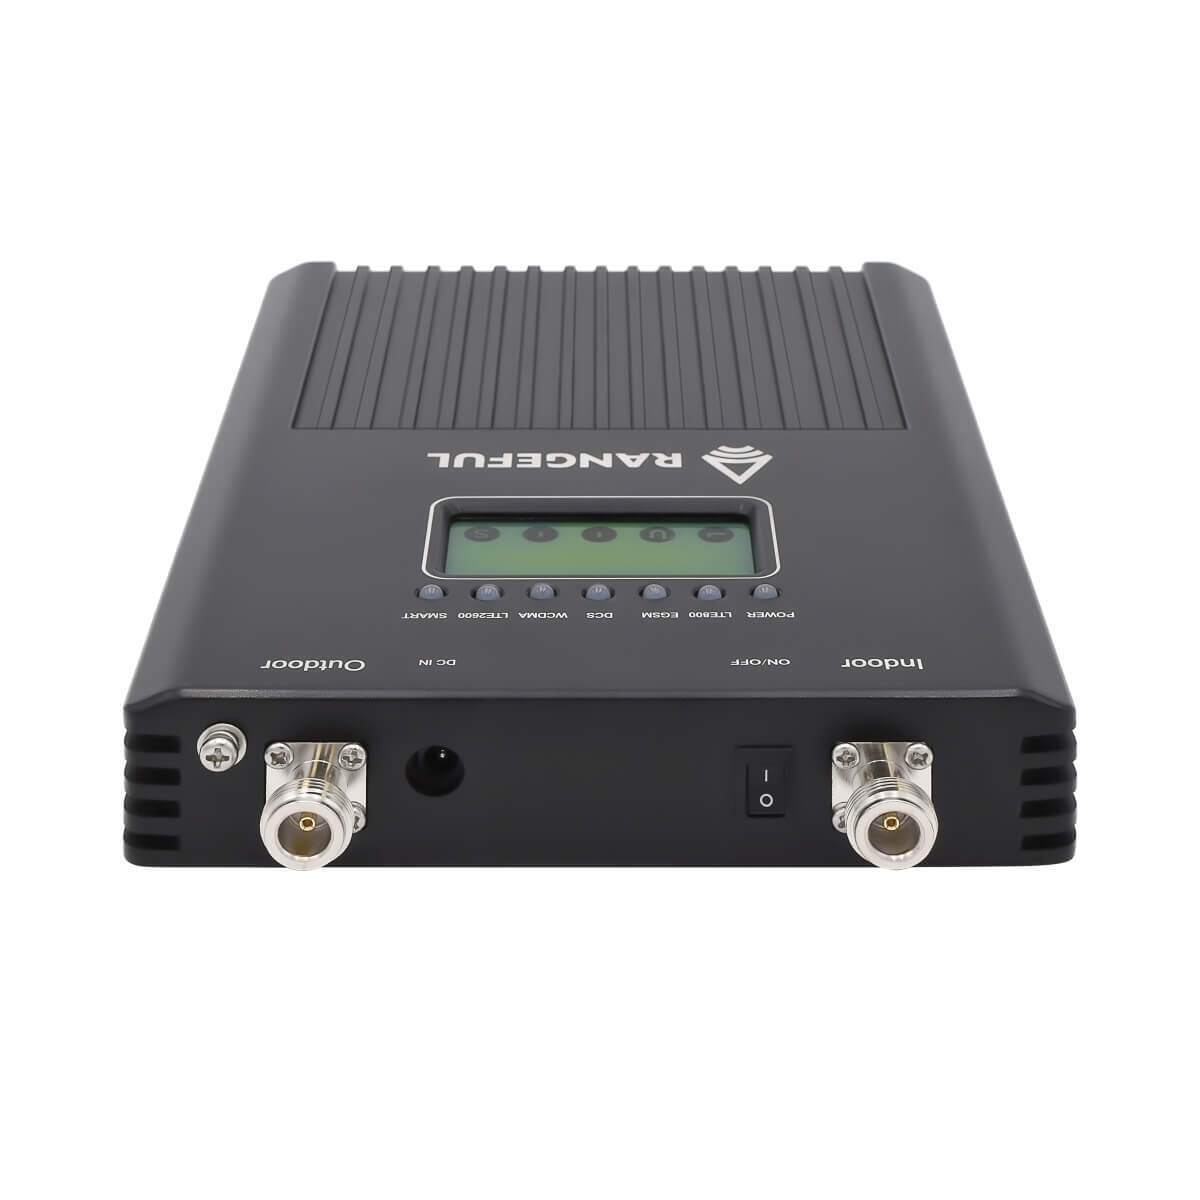 Pro Amplificador Cobertura Móvil GSM - 300 m²